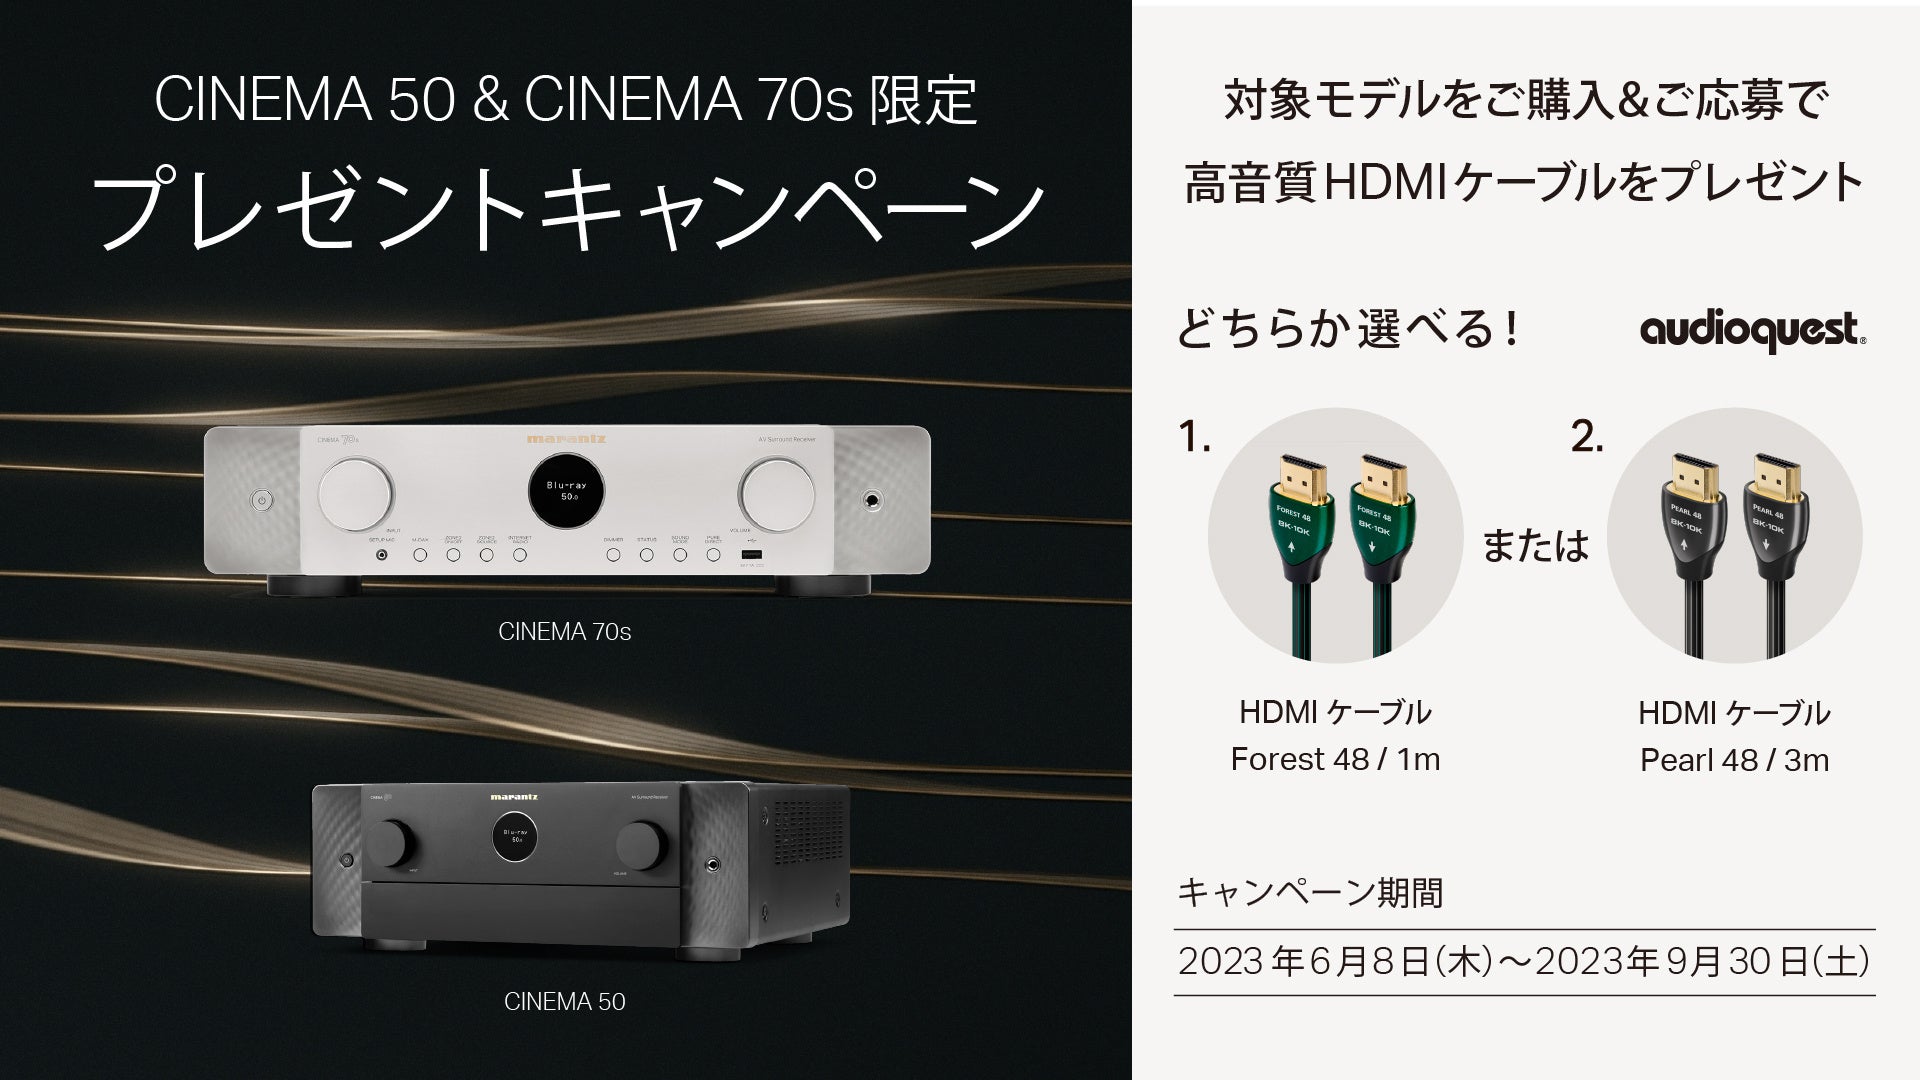 [Marantzキャンペーン情報]「高音質HDMIケーブルプレゼントキャンペーン」実施のお知らせ